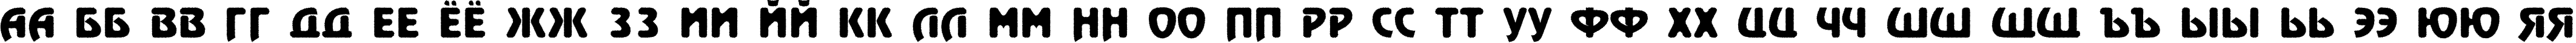 Пример написания русского алфавита шрифтом a_RewinderTitulRgh Bold